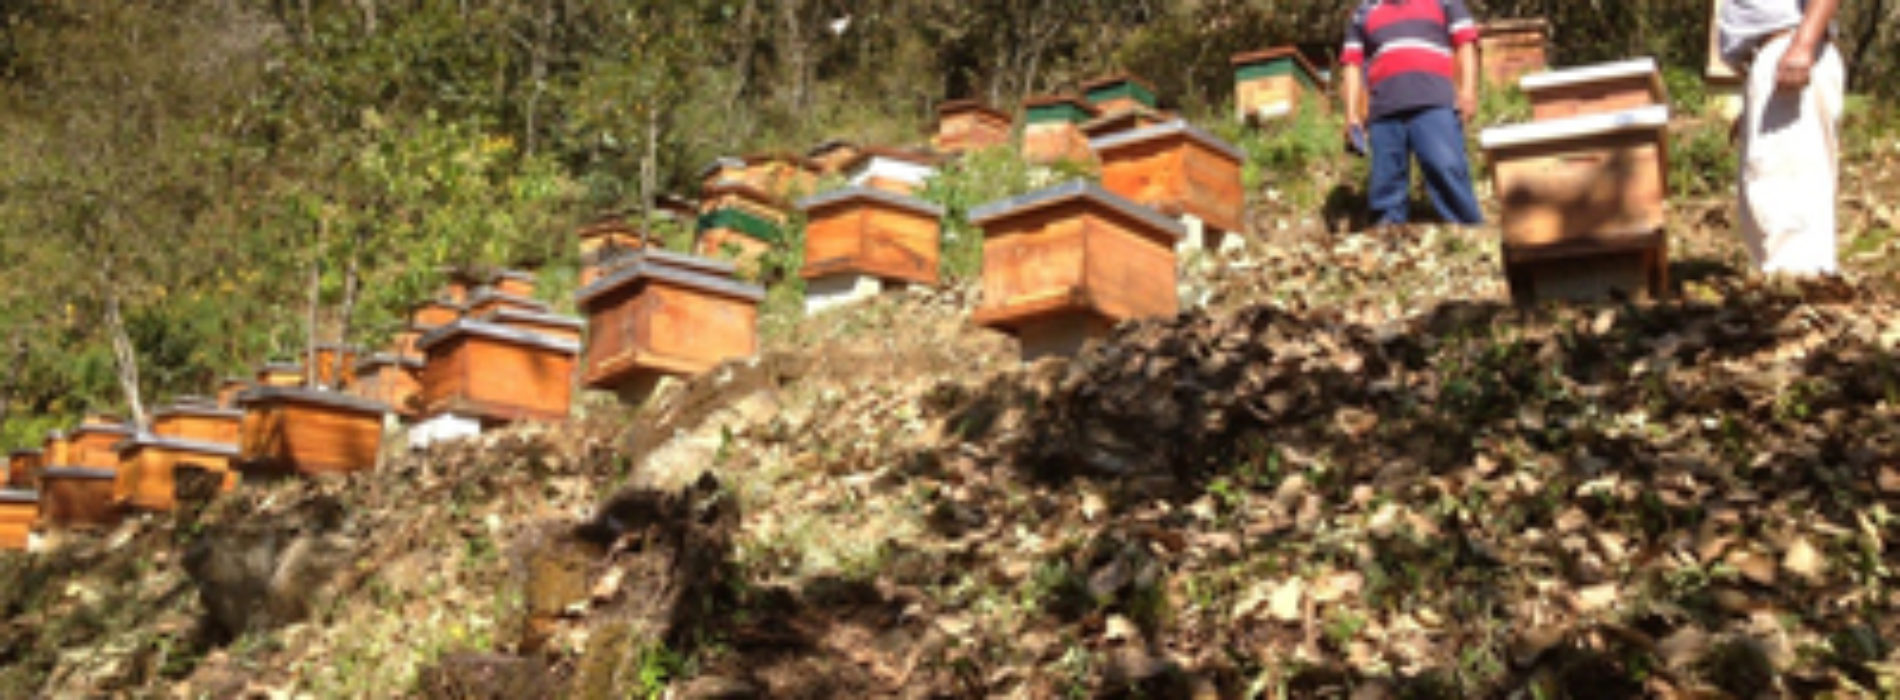 Producción de miel, principal generadora de empleos, riqueza y divisas en Oaxaca